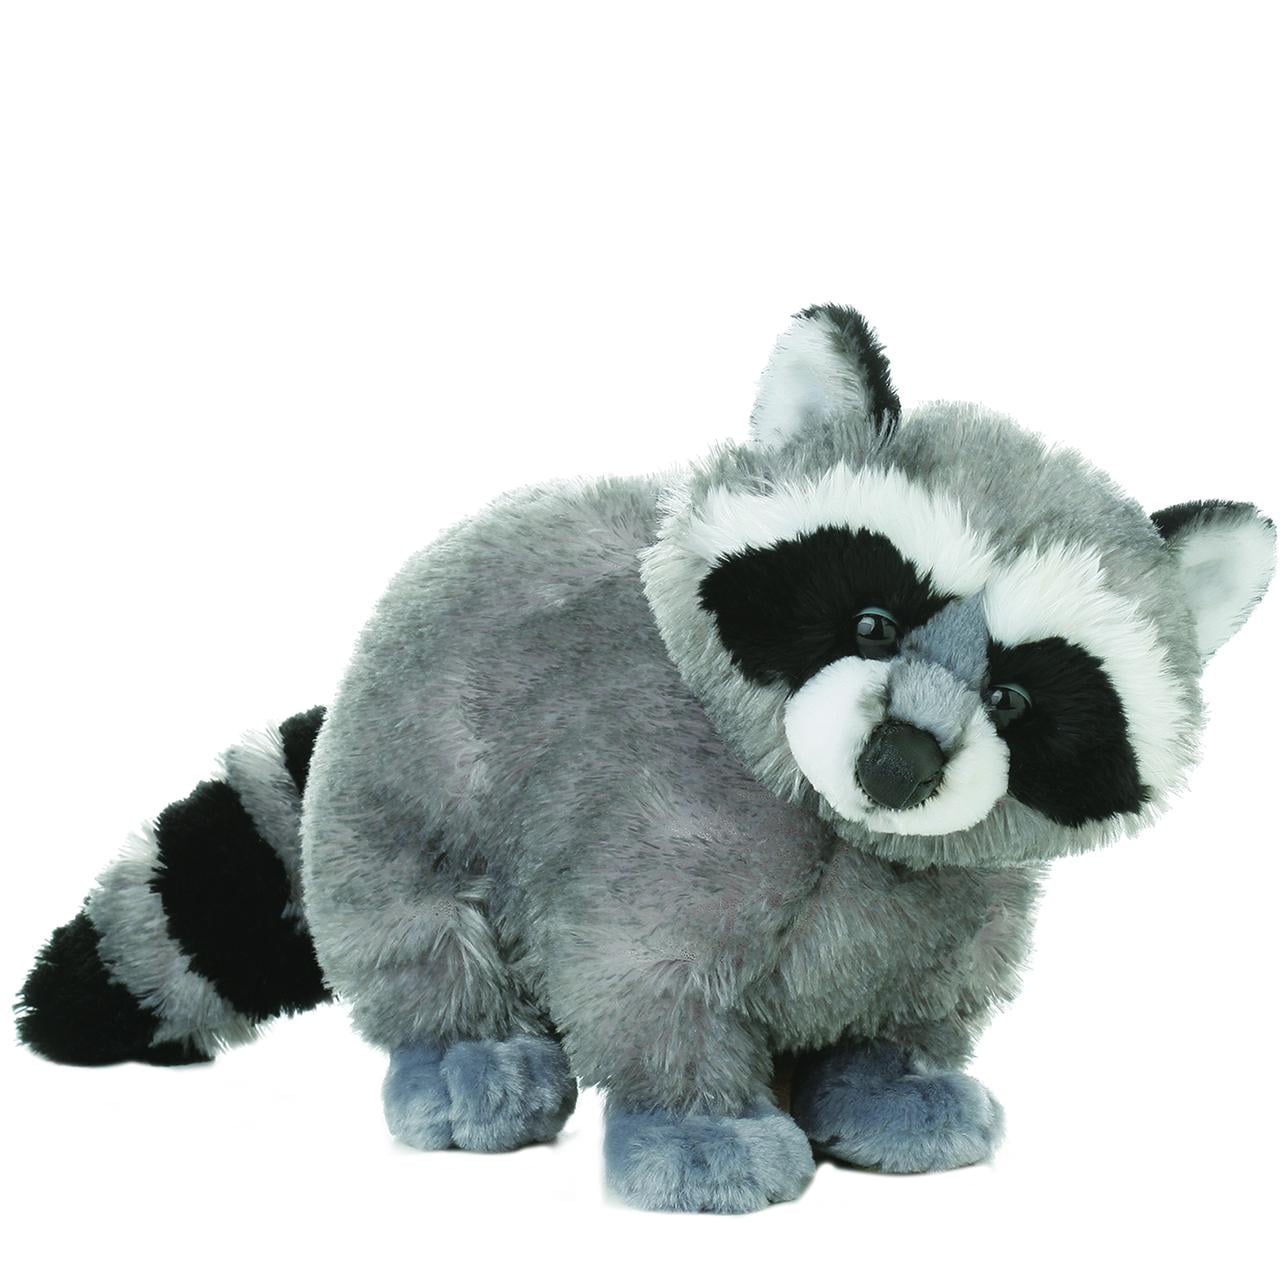 Мягкие игрушки животных купить. Aurora 12" Bandit Raccoon Flopsie Plush stuffed animal. Aurora игрушки енот.